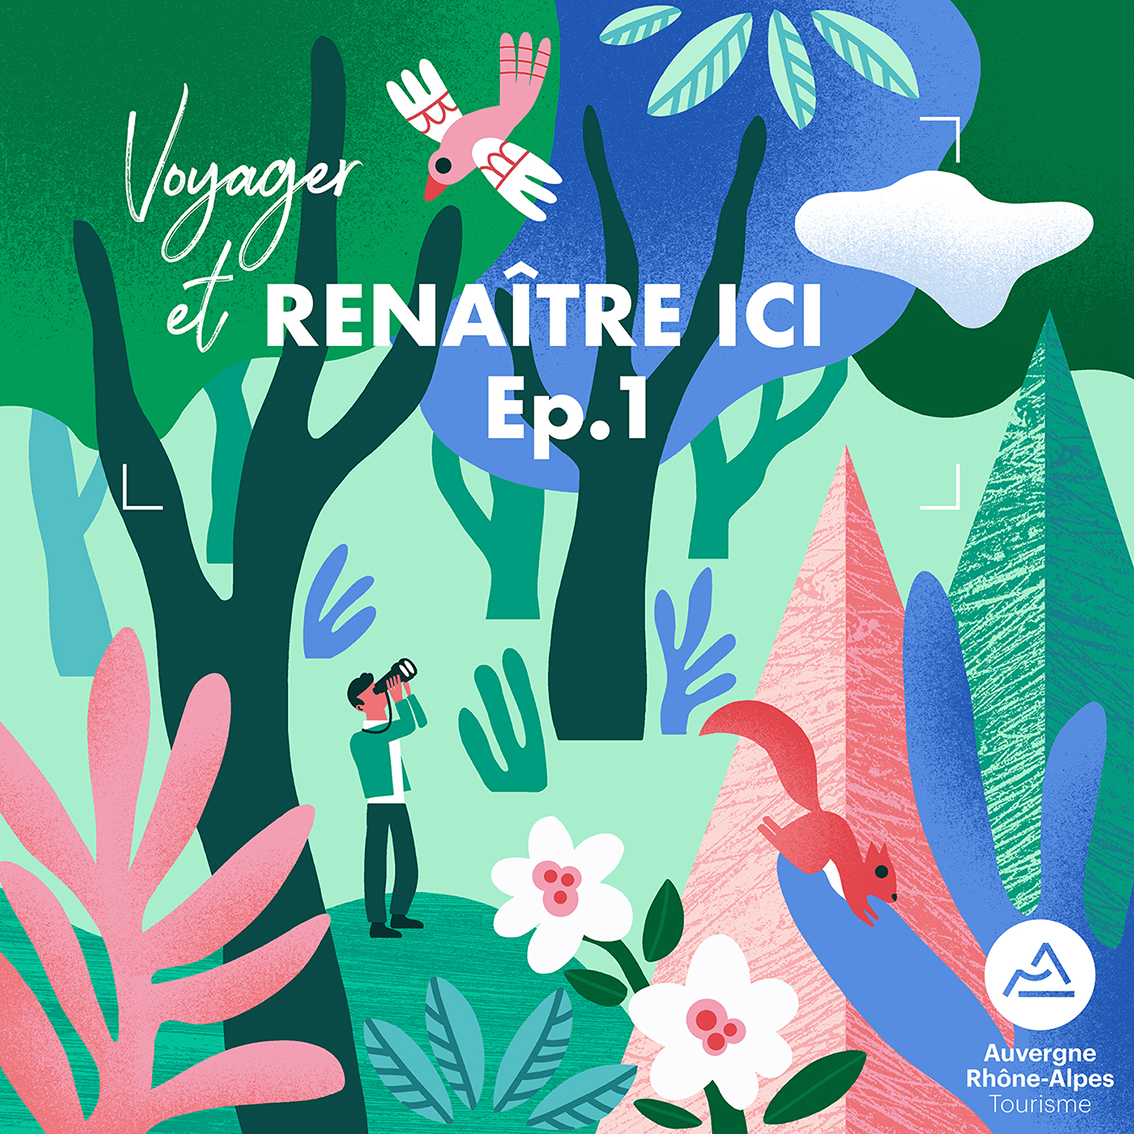 Voyager et Renaître ici, le podcast de la région Auvergne-Rhône-Alpes